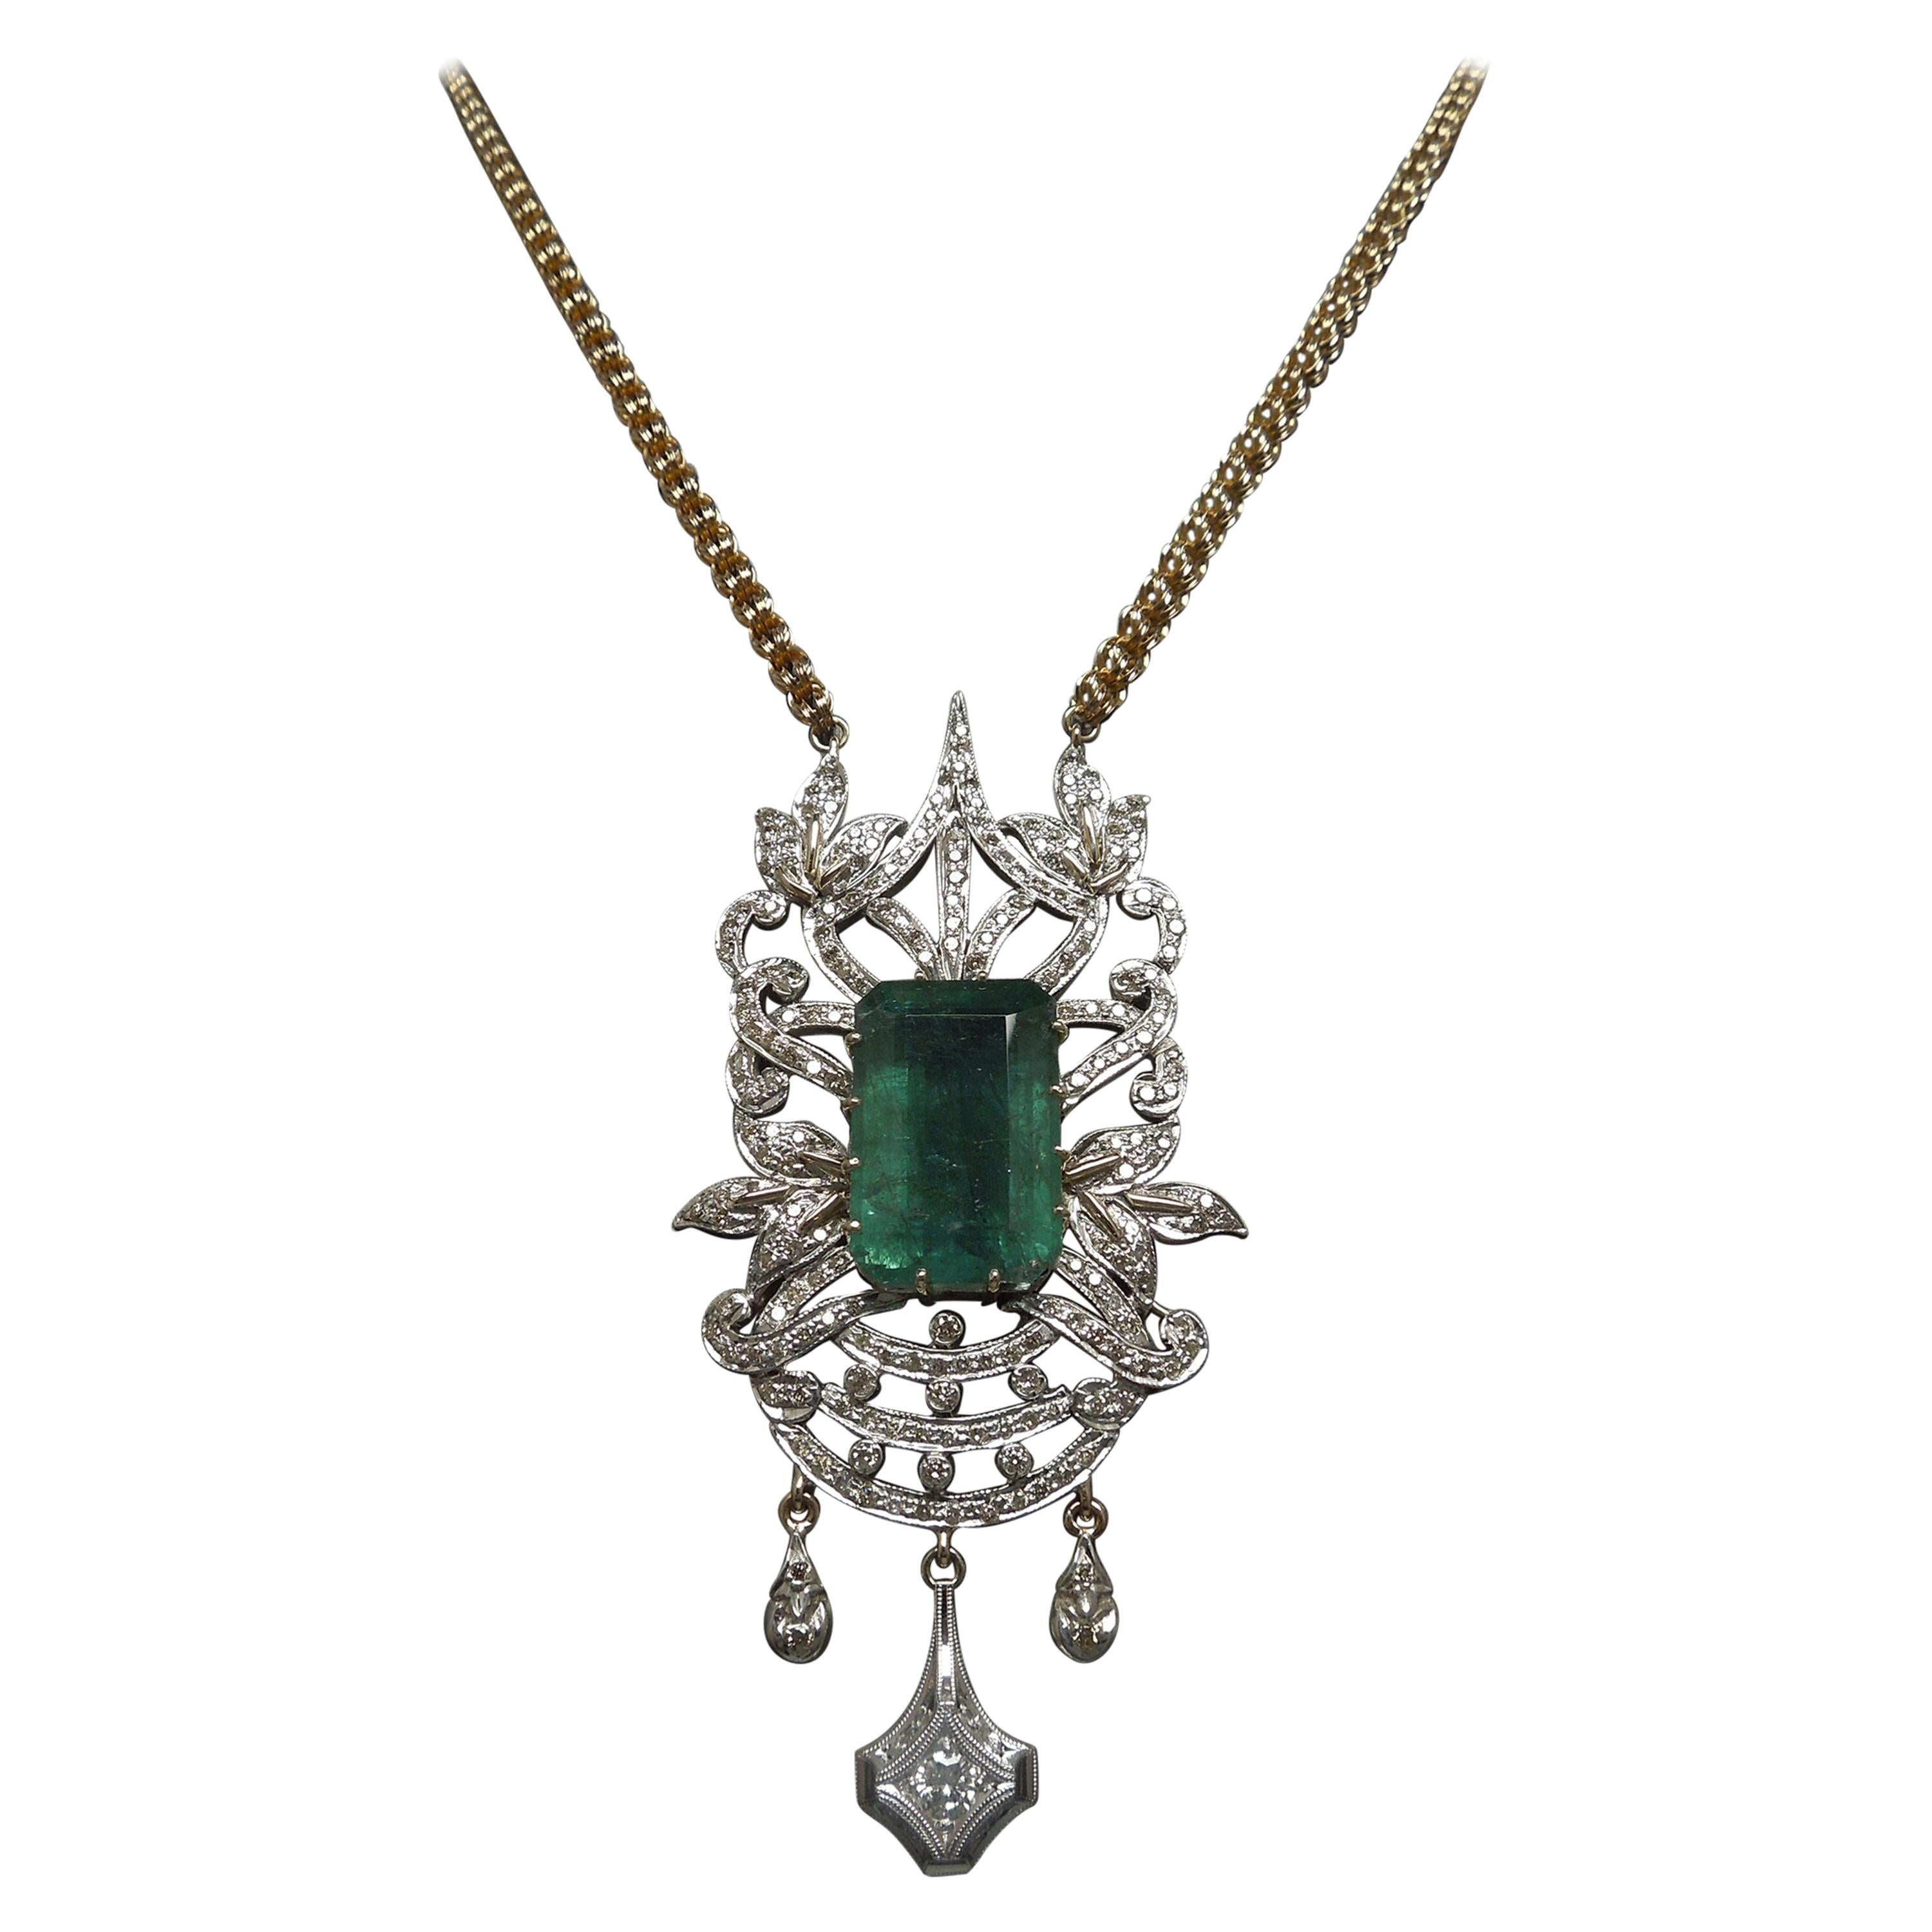 23.55 Carat Emerald Cut Emerald and Diamond Necklace